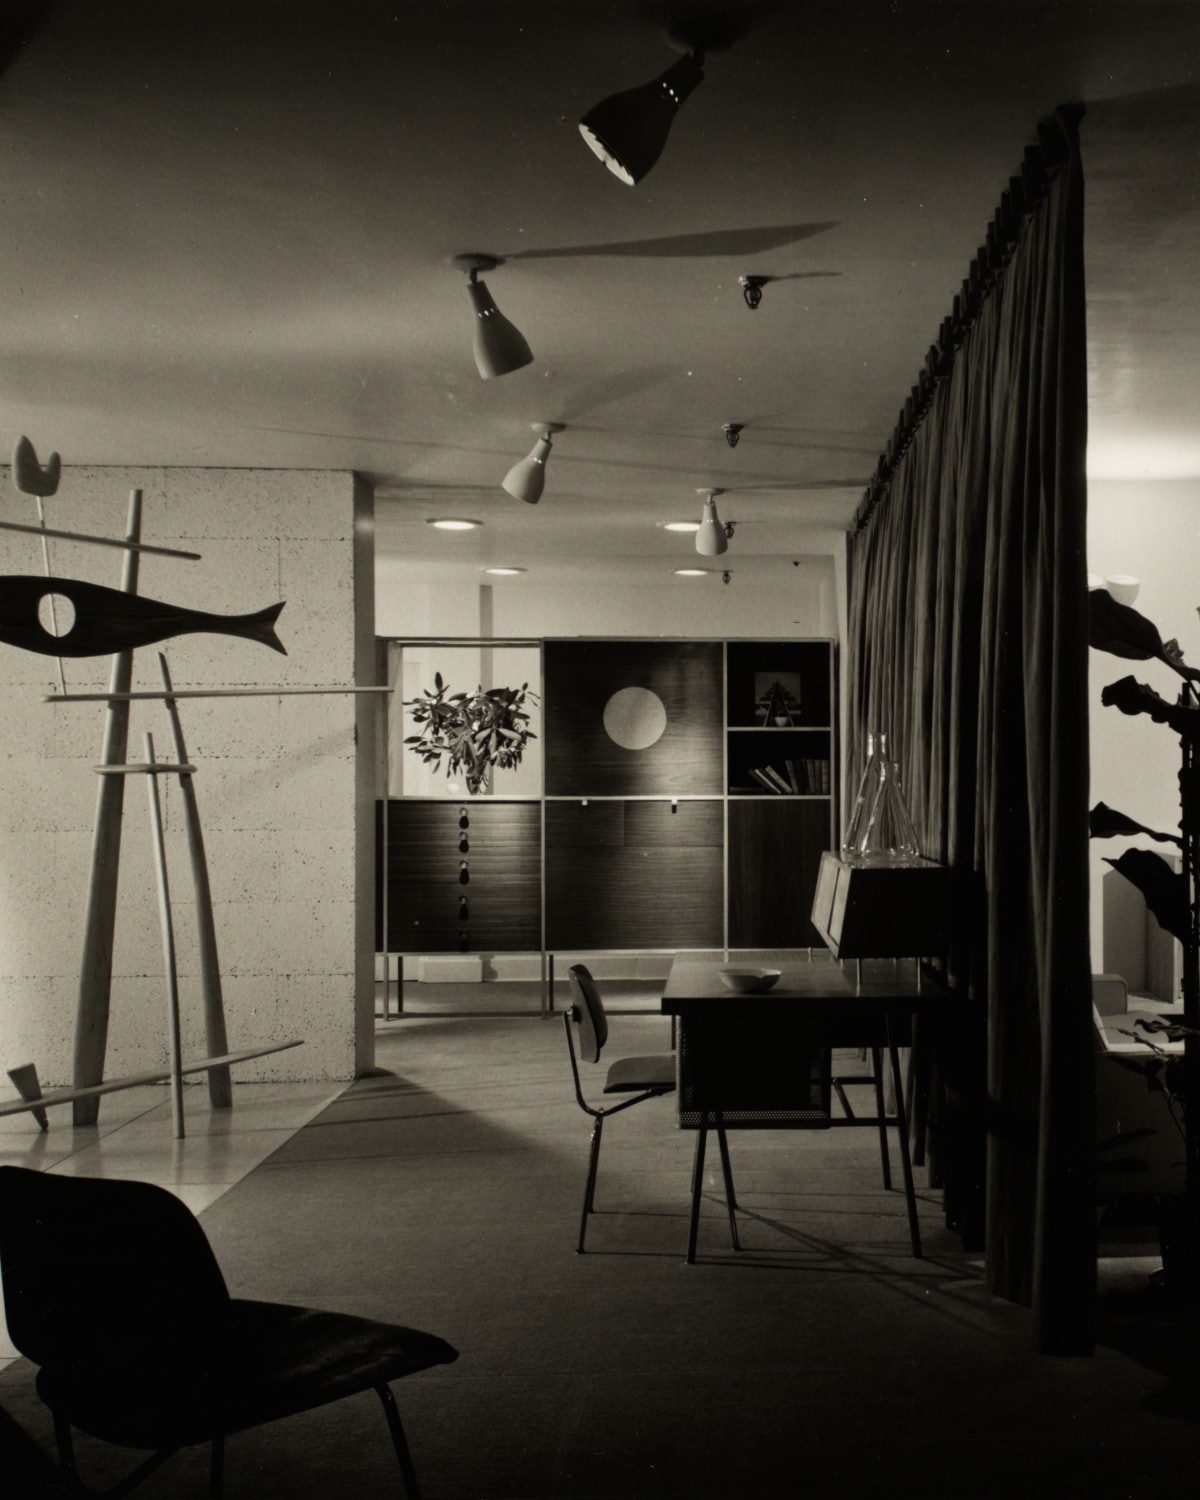 グランドラピッツショールームはジョージ・ネルソンによって設計され、1948年にオープンしました。